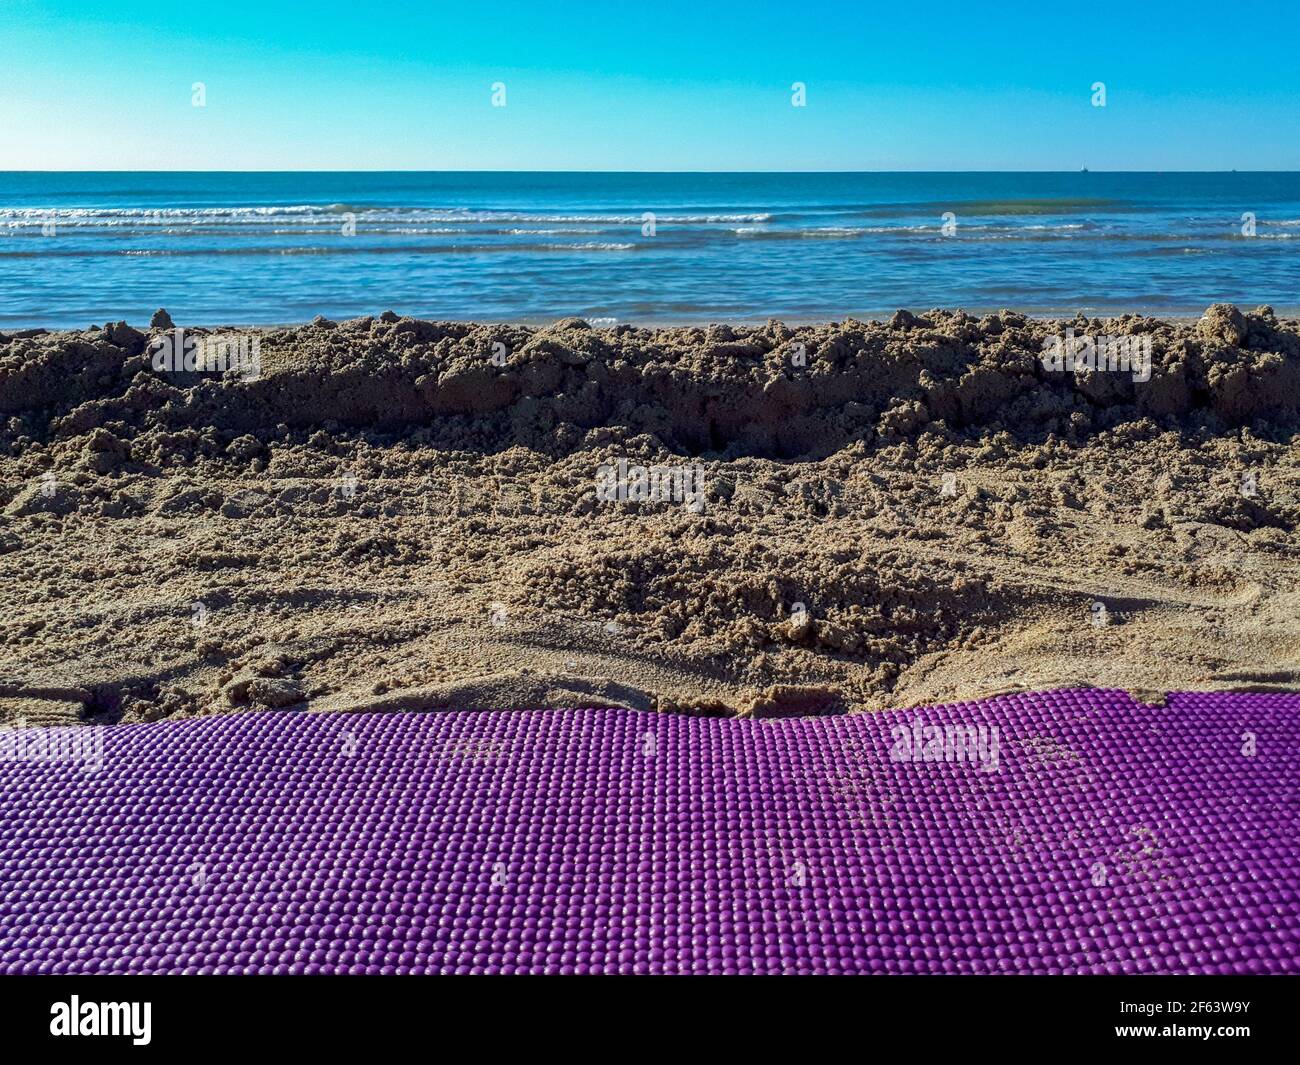 Una foto in primo piano di mare e spiaggia sabbiosa, tappeto yoga sulla sabbia. Yoga in spiaggia per uno stile di vita sano Foto Stock